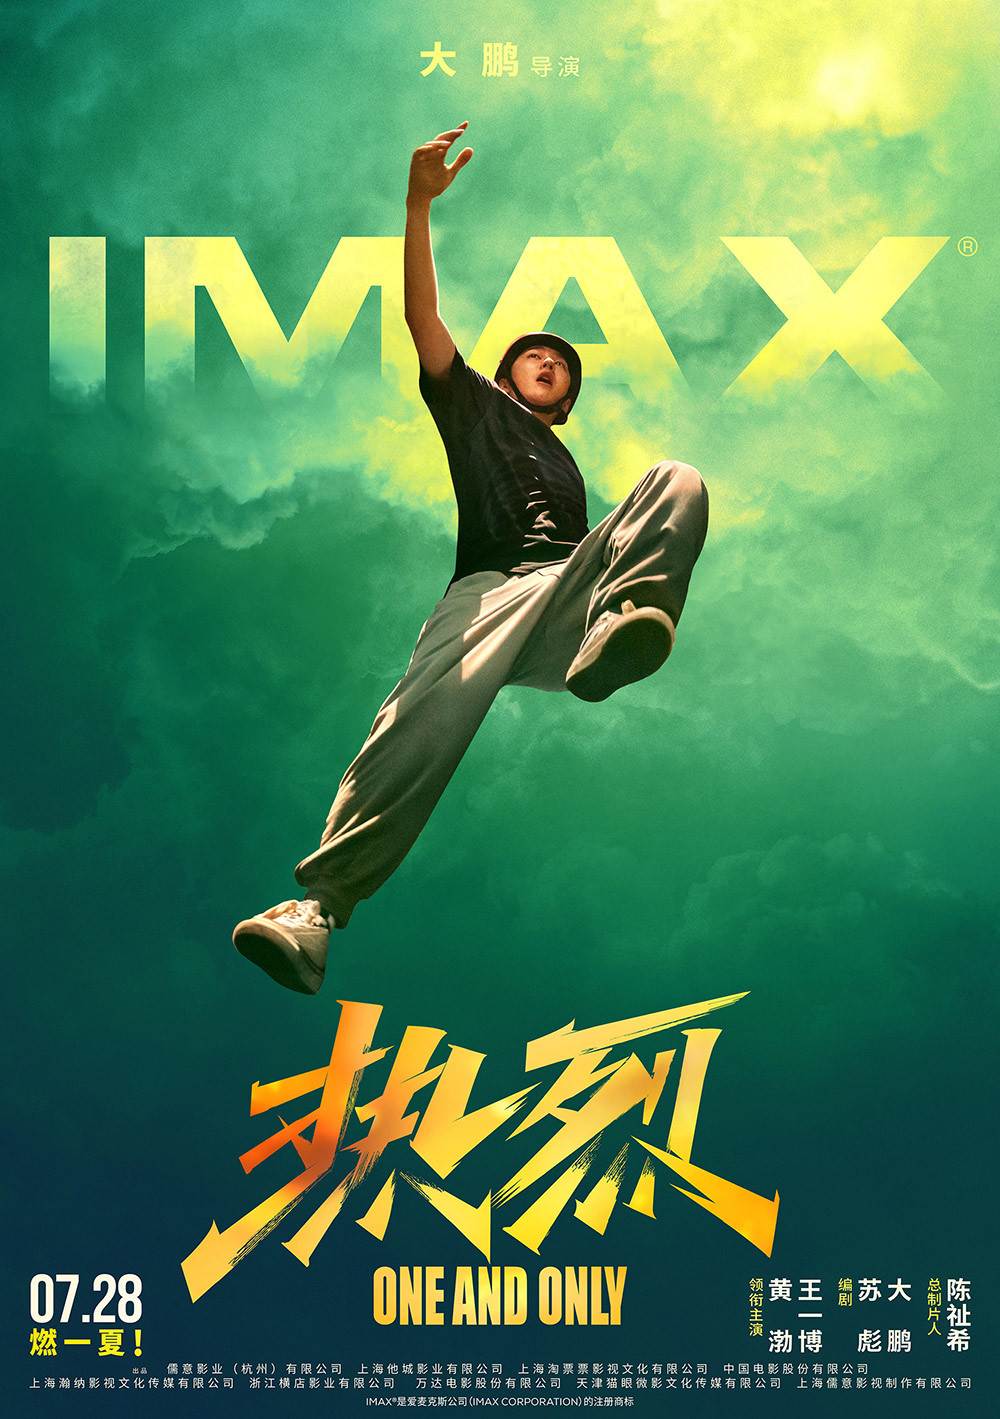 【影视动漫】IMAX在京举办《热烈》观影 20分钟大赛场面必看IMAX